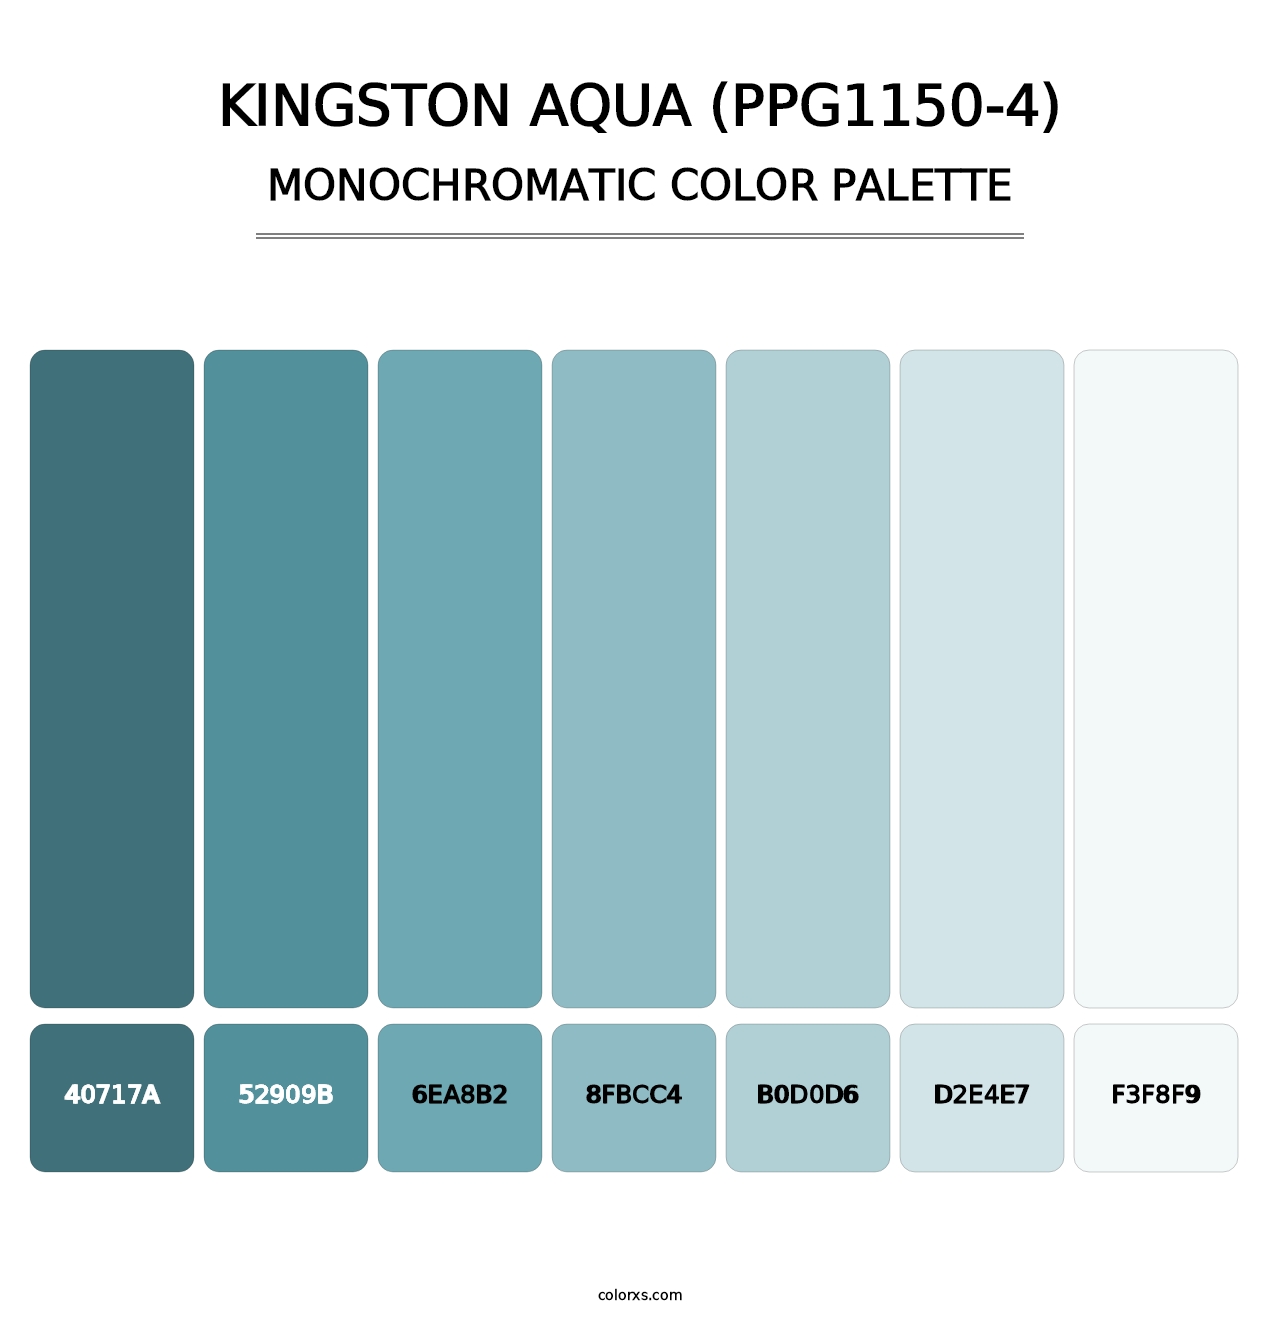 Kingston Aqua (PPG1150-4) - Monochromatic Color Palette